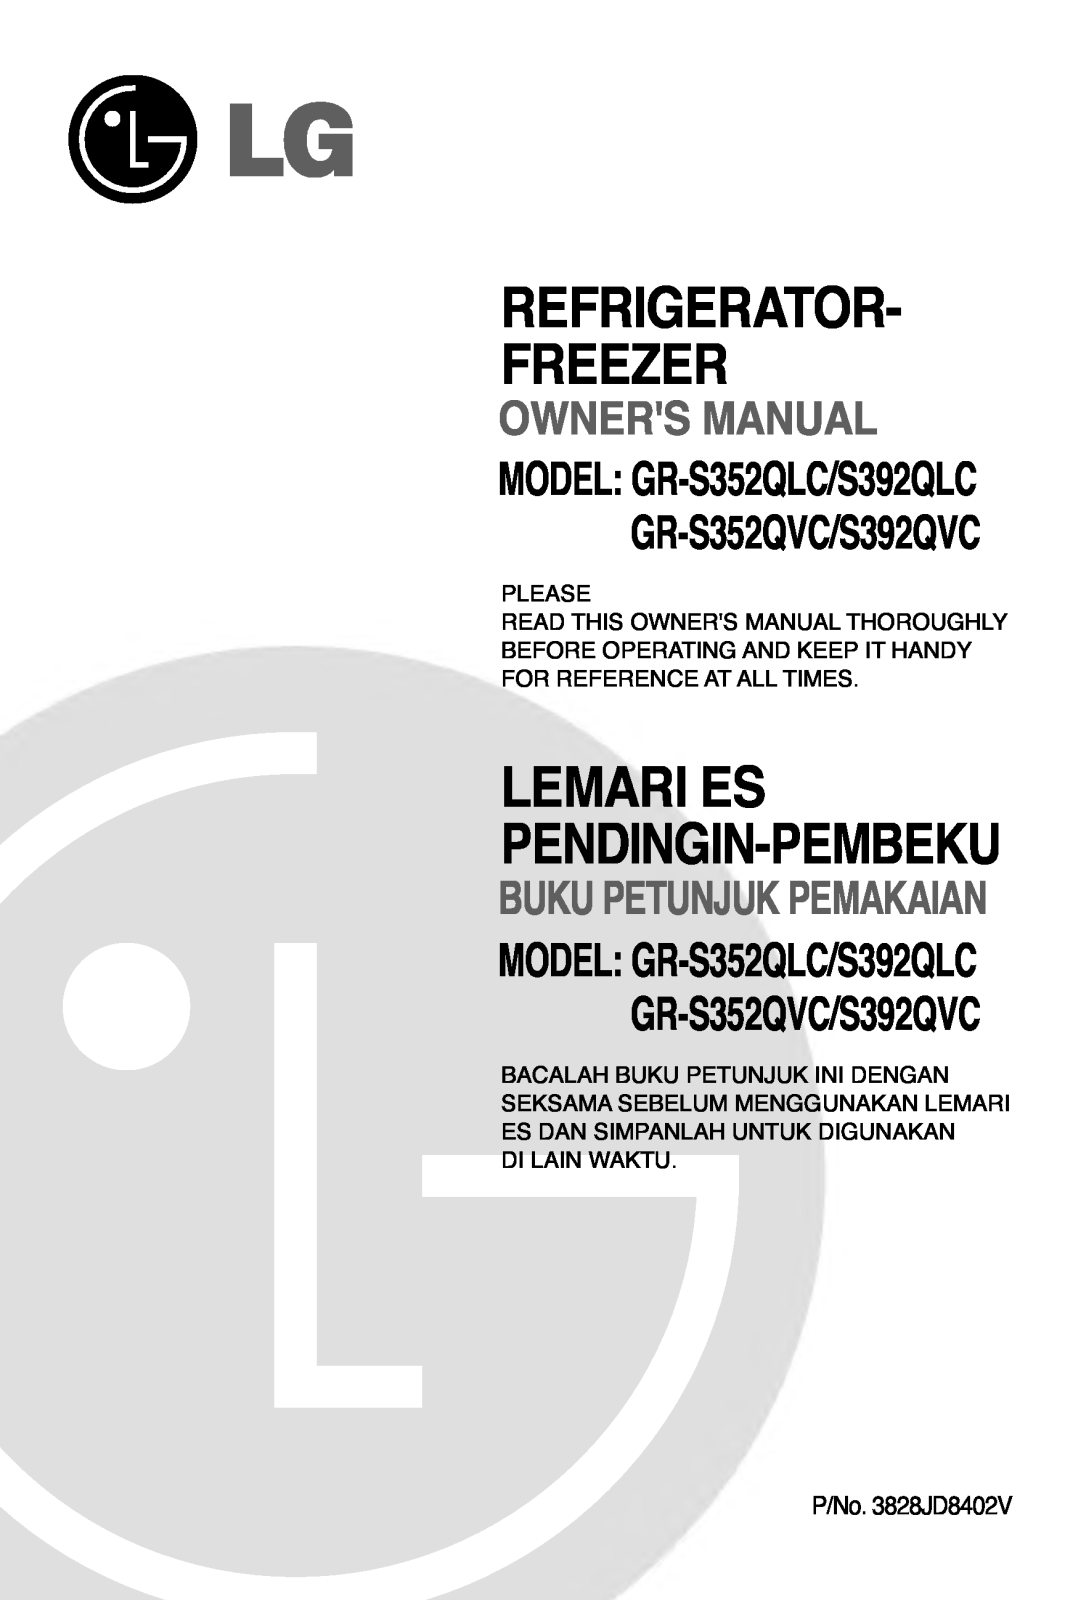 LG GR-S392QTC User Manual